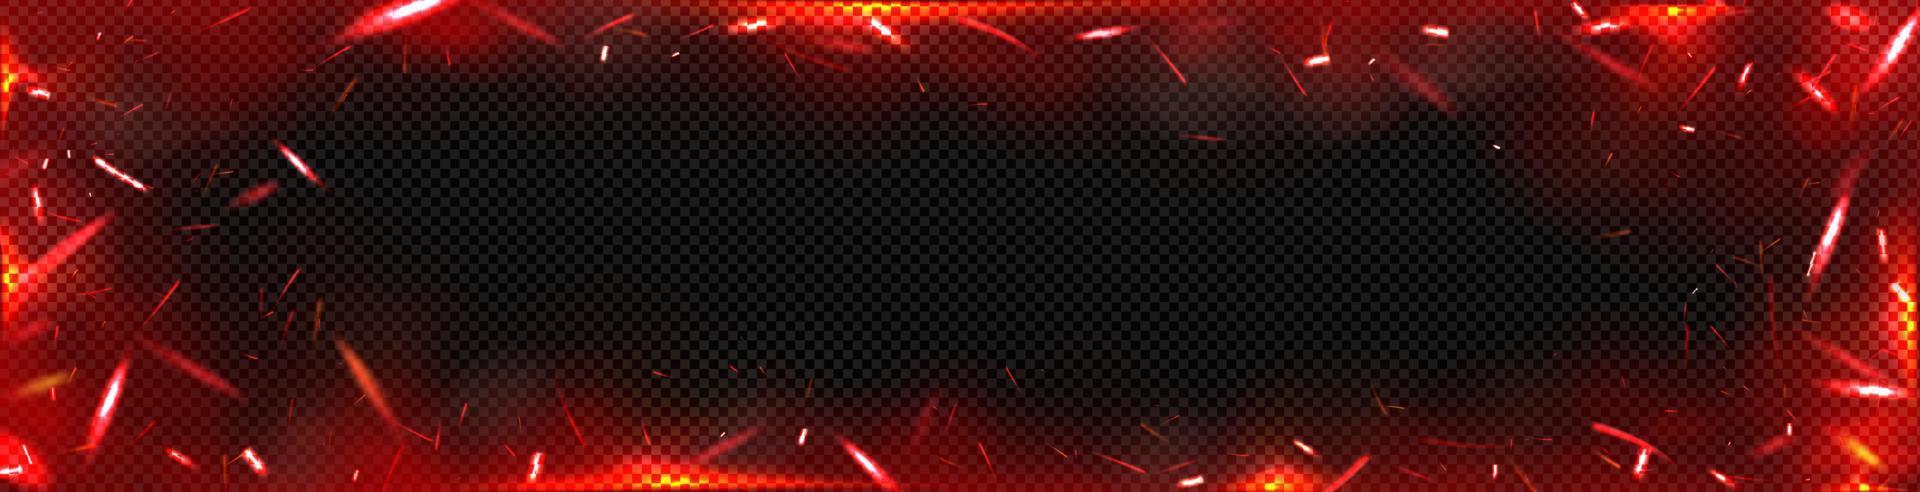 Hintergrund mit roten Feuerfunken, Overlay-Effekt vektor